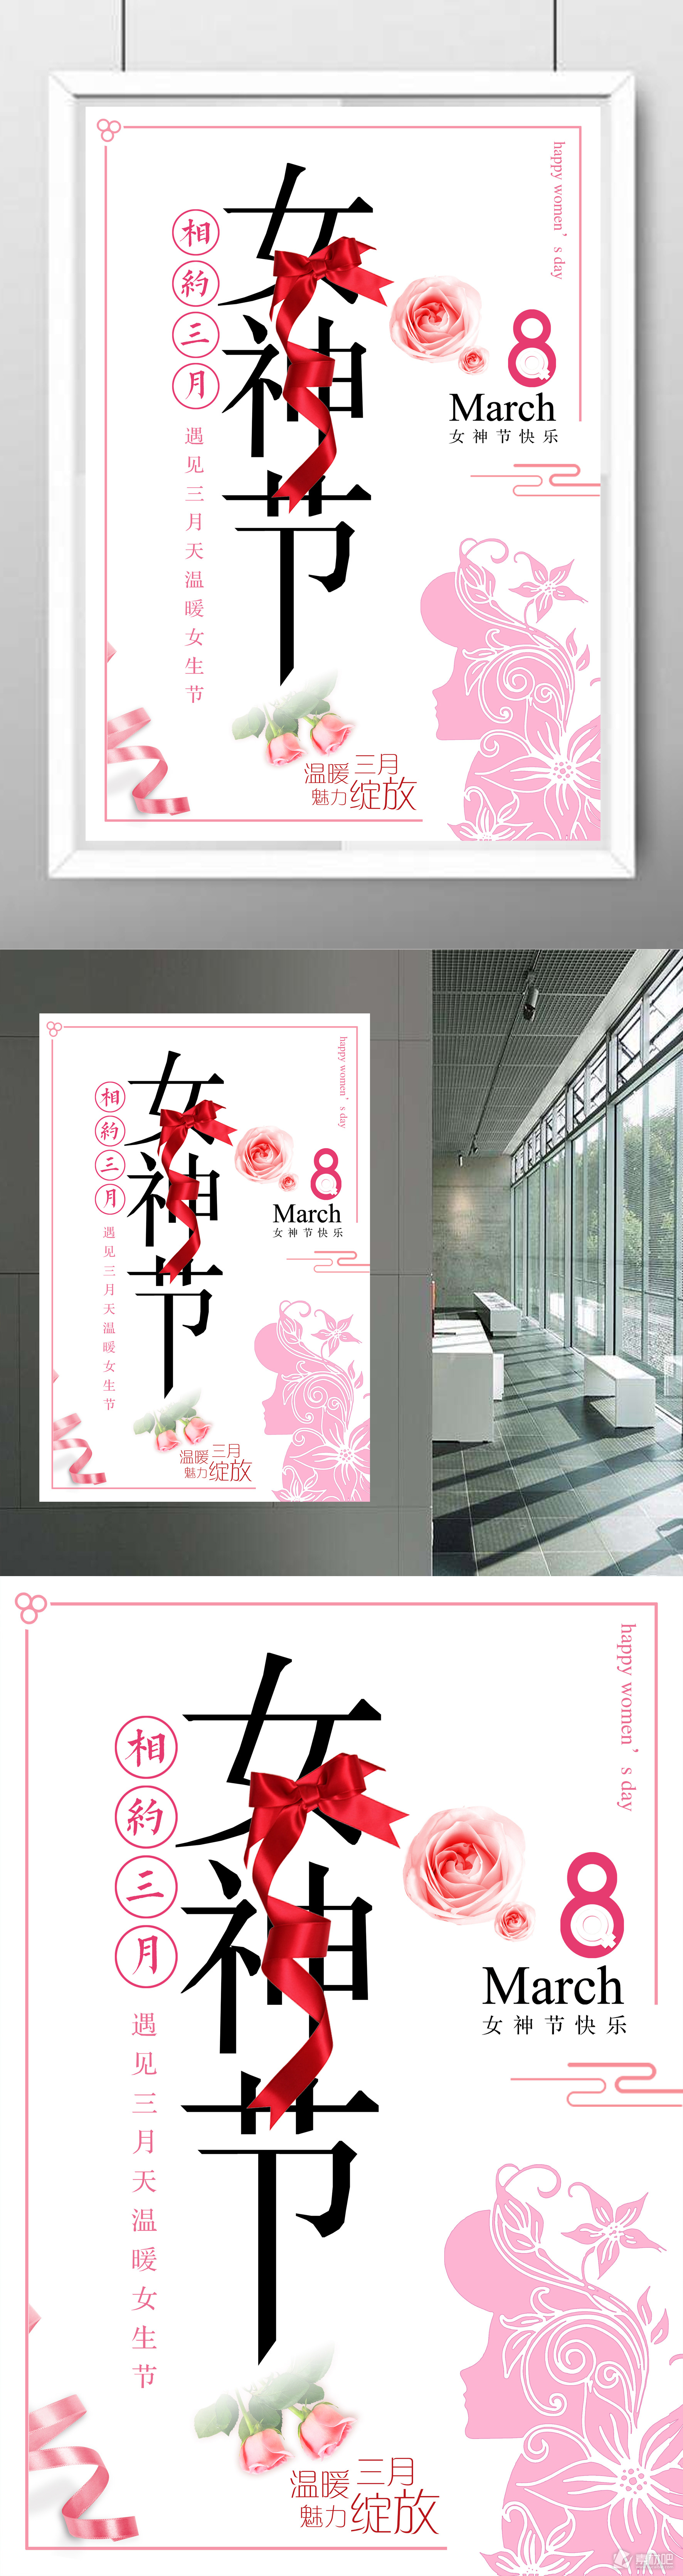 三八魅力女神节宣传海报